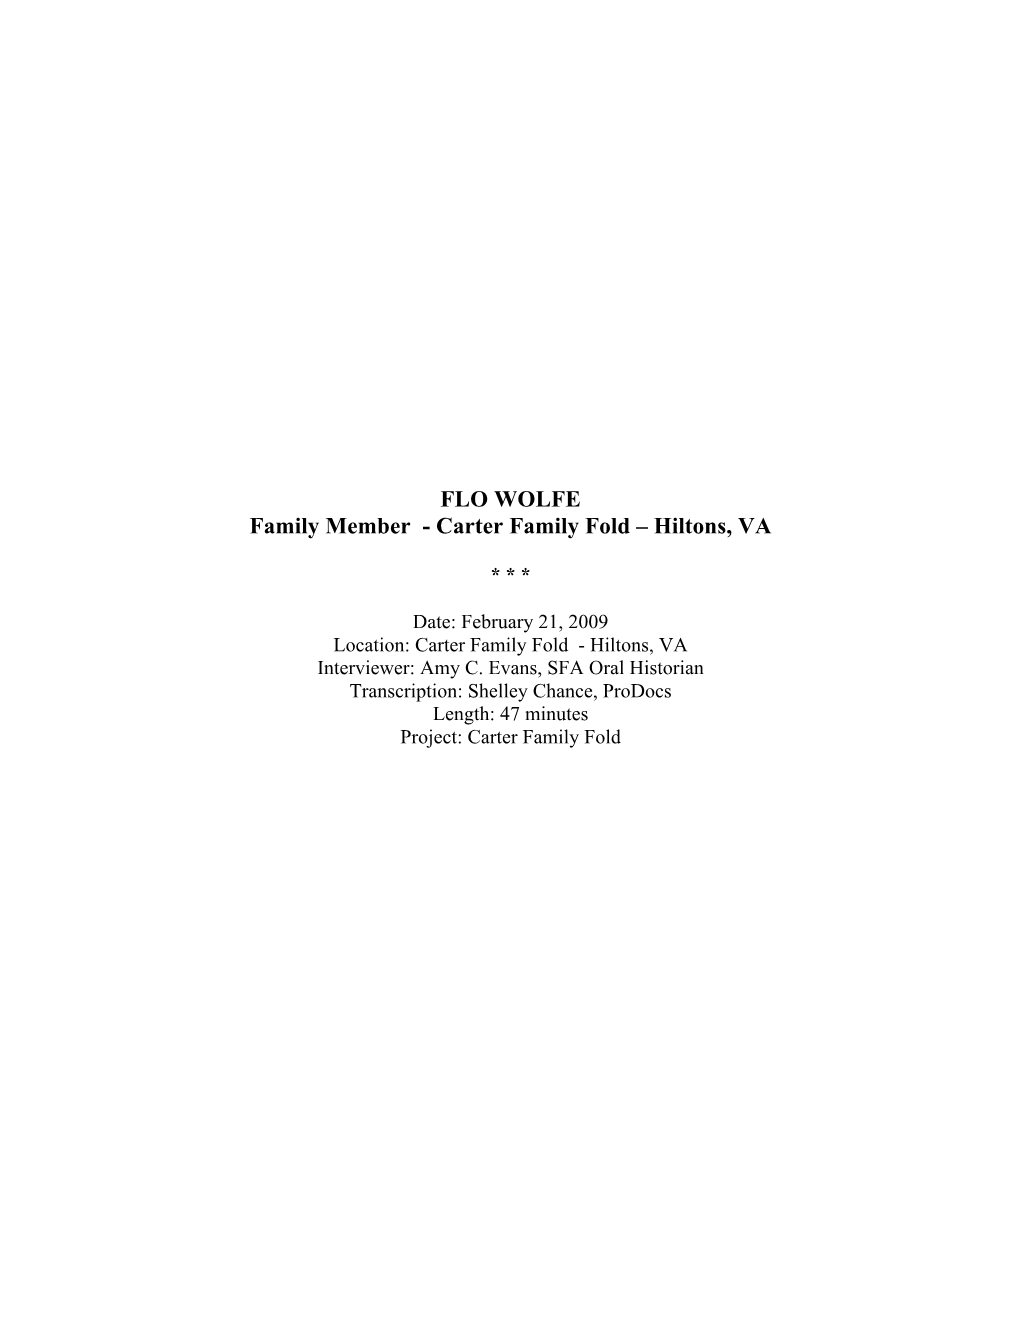 FLO WOLFE Family Member - Carter Family Fold – Hiltons, VA